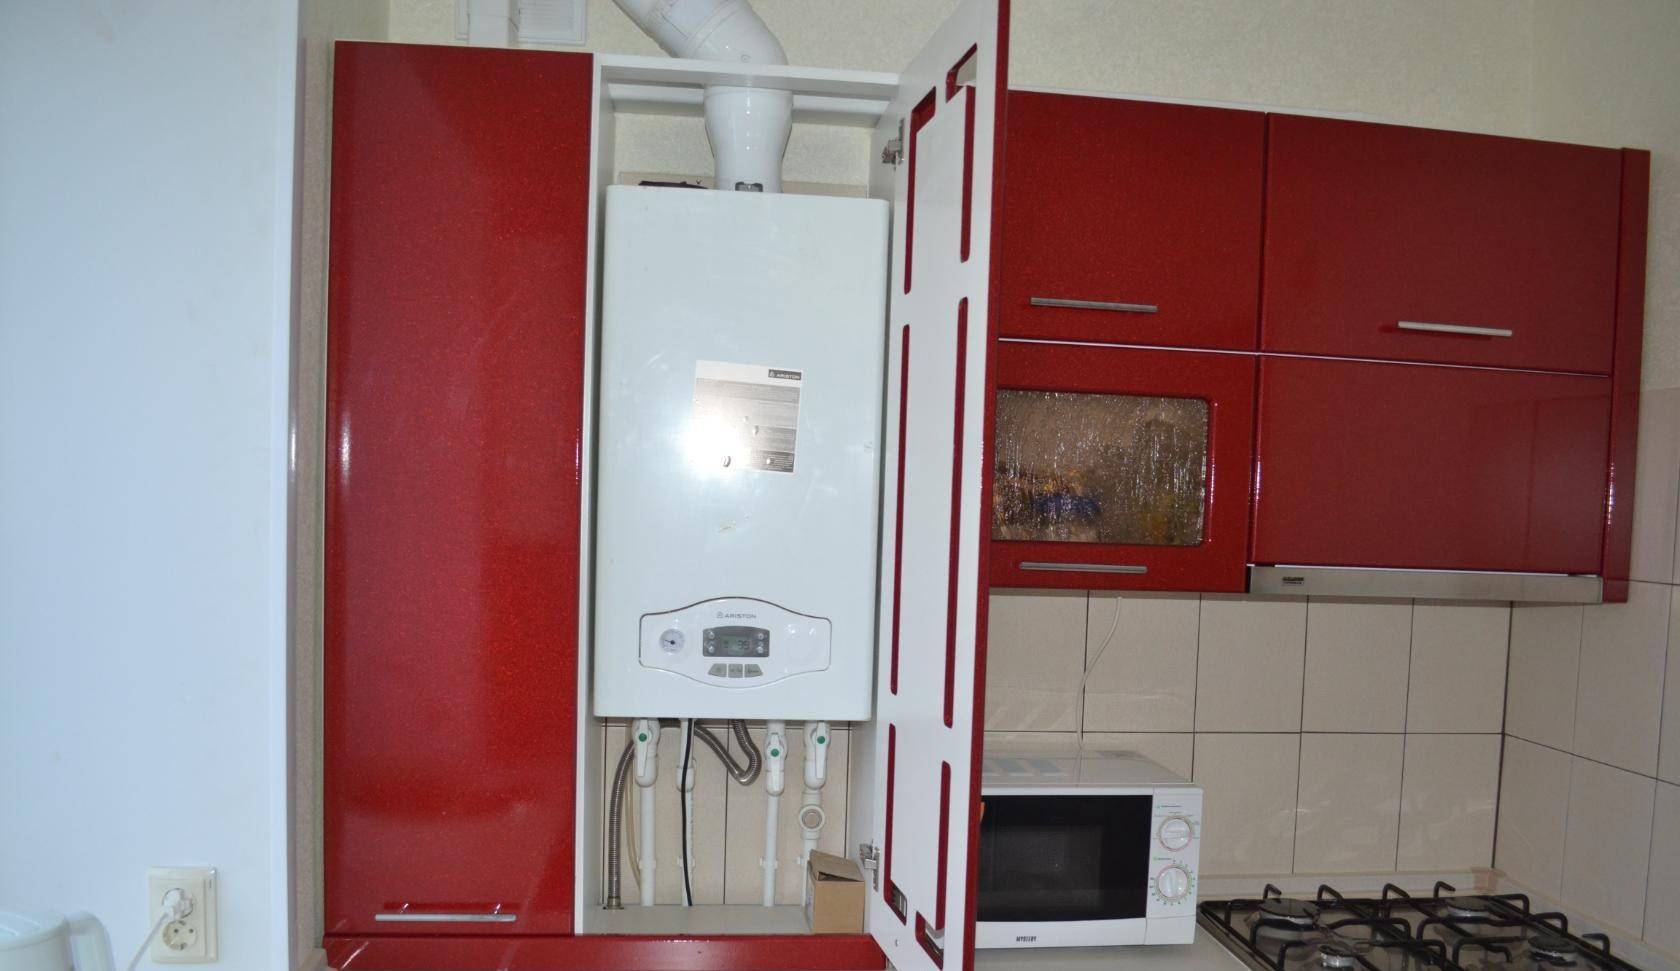 Кухня в хрущевке с газовой колонкой, холодильником и кухонным гарнитуром